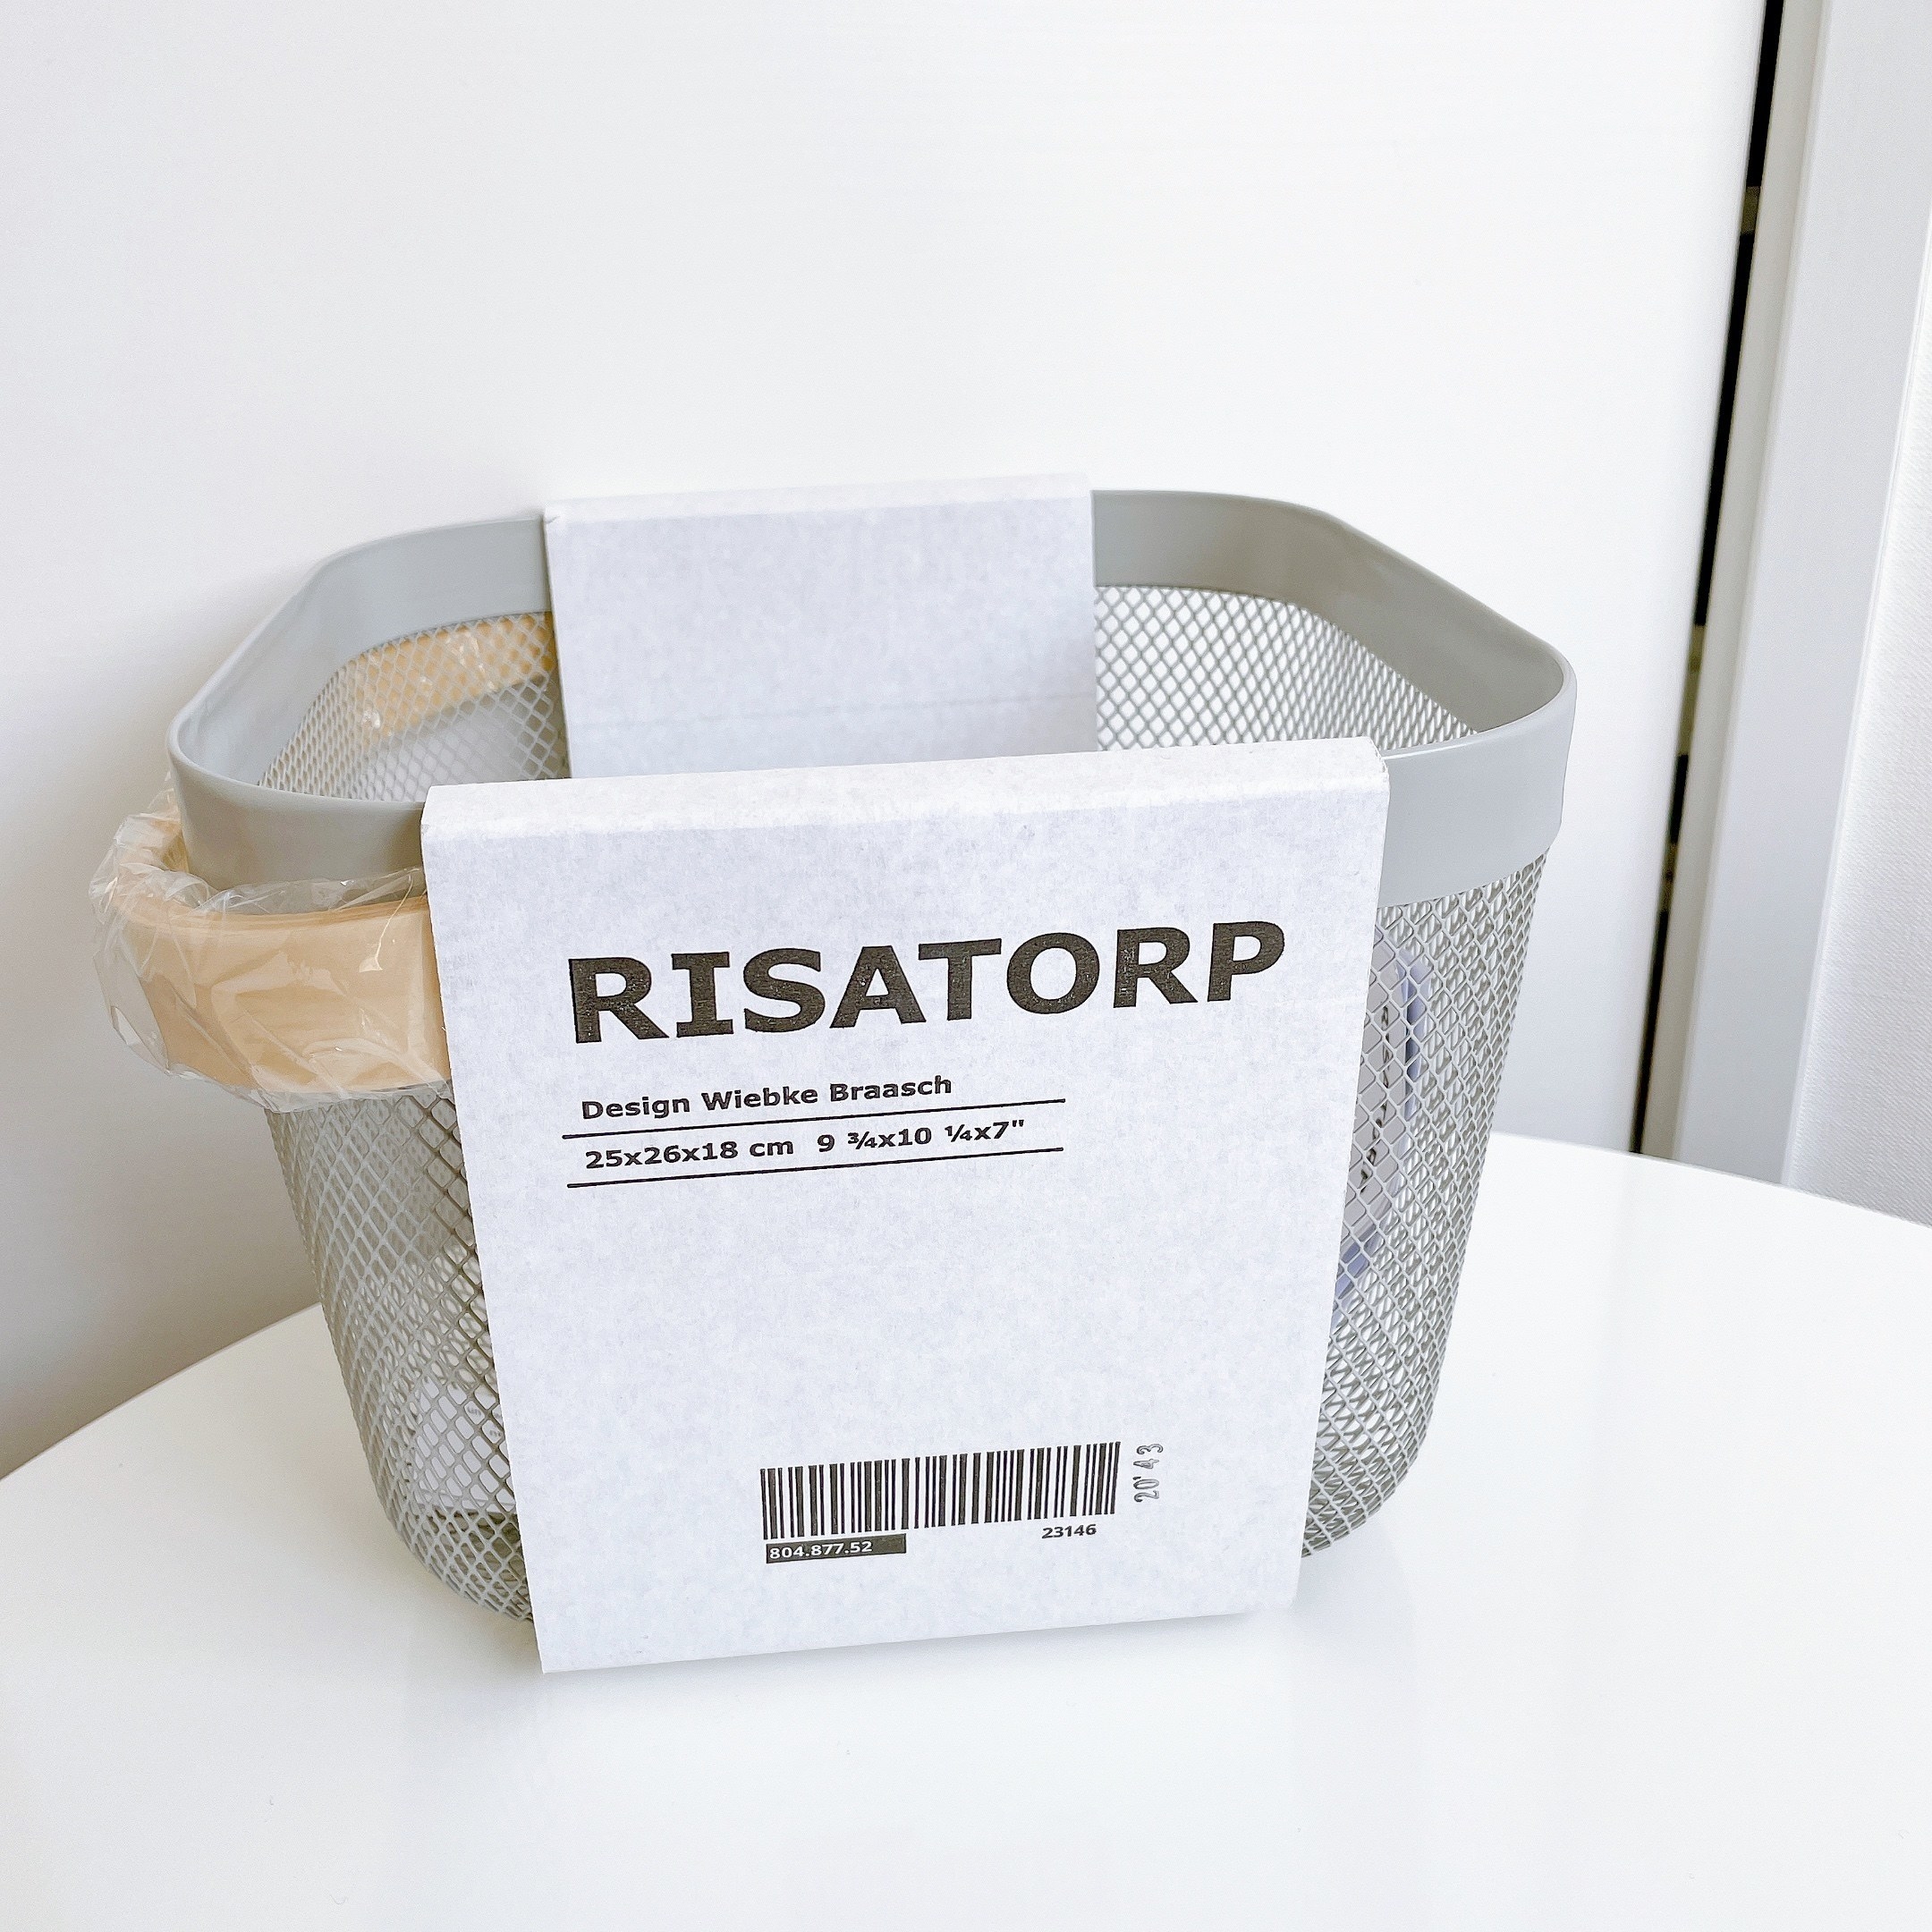 IKEA（イケア）のおすすめ収納グッズ 「RISATORP リーサトルプ バスケット」